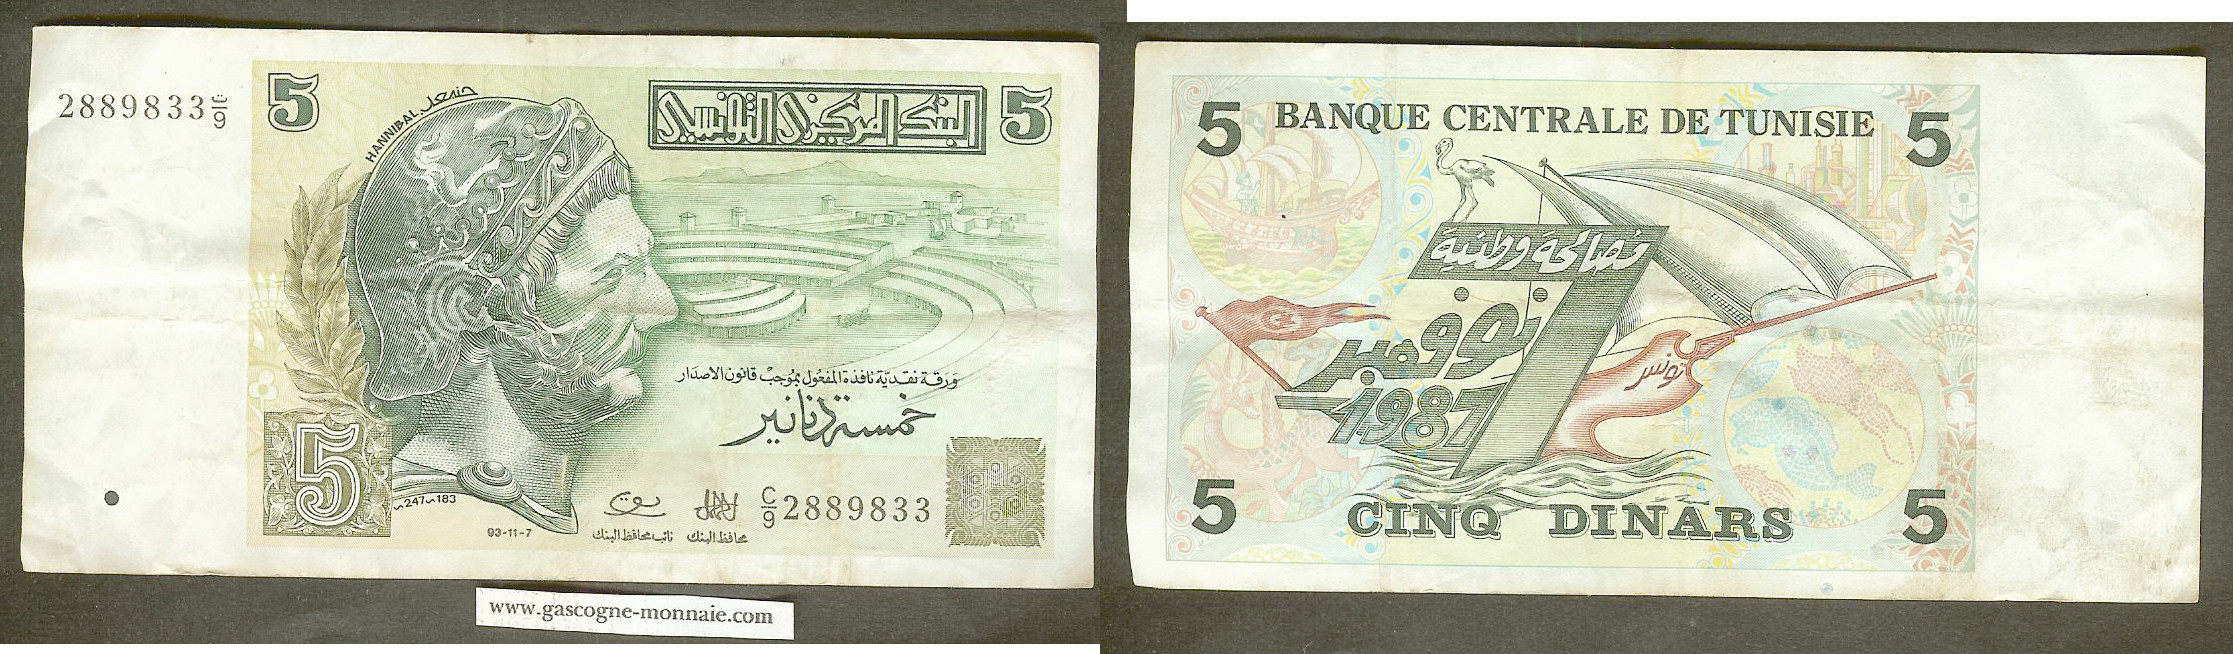 Tunisia 5 dinar 1993 VF+